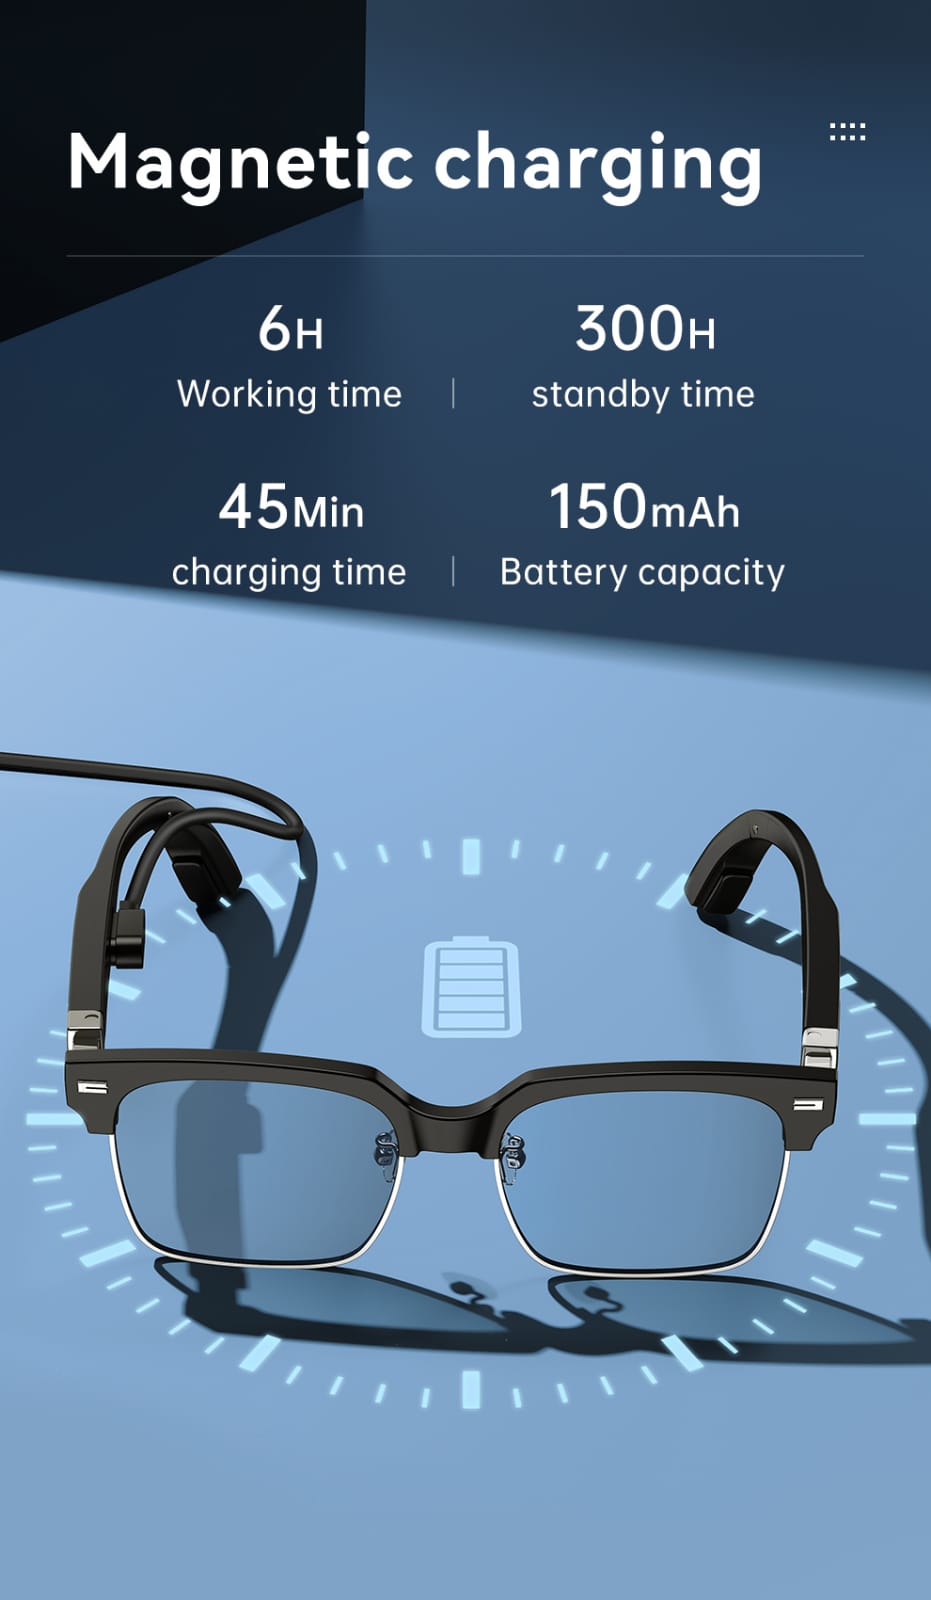 eEAR BTGC-001: Intelligente Bluetooth-Brille mit Knochenleitungstechnologie in Militärqualität, neueste Audiotechnologie für intelligente Brillen. Kann als intelligente optische und BT-Audiobrille verwendet werden, alles in einem